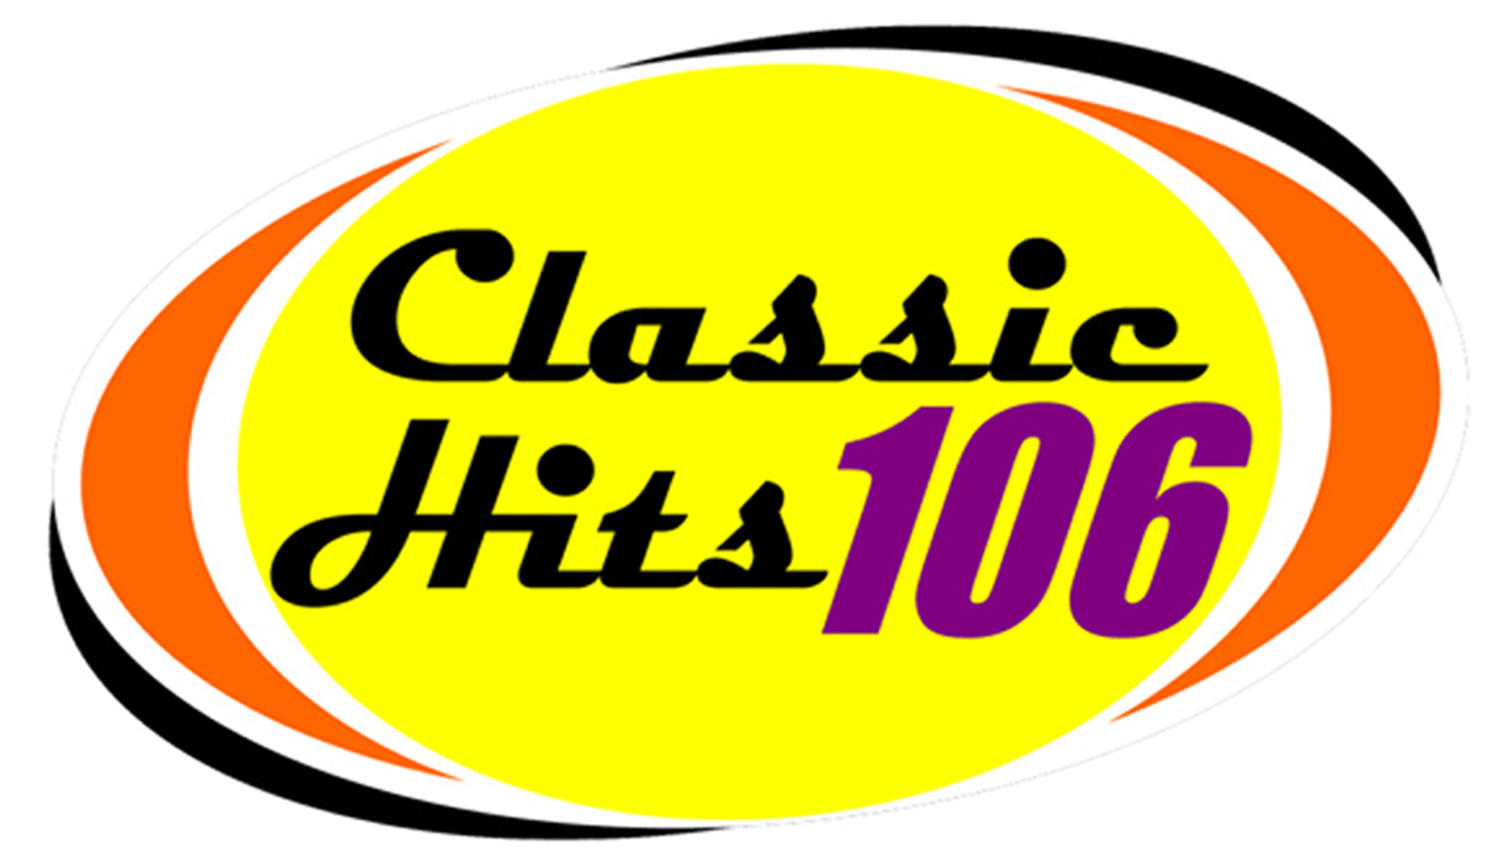 classic-hits-106-logo